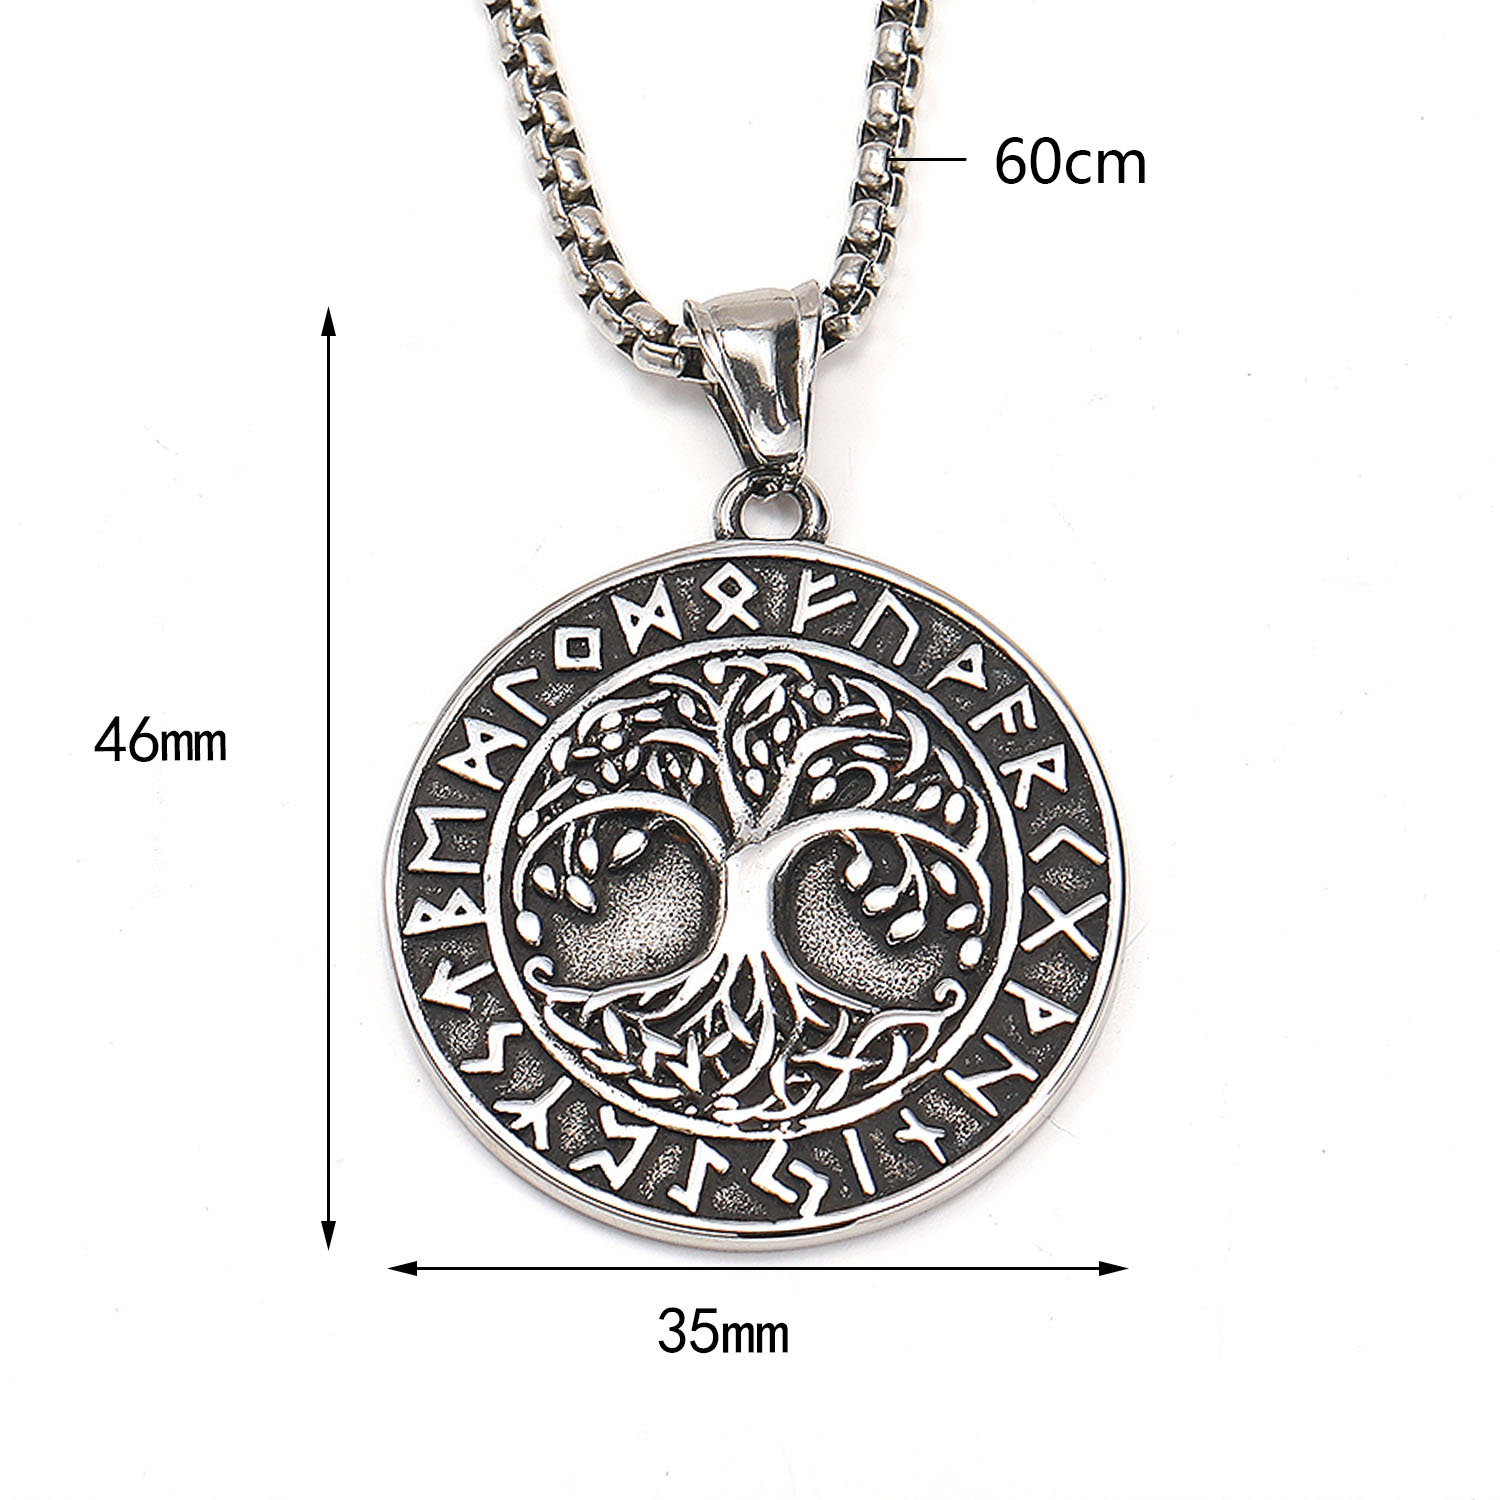 Necklace 60cm